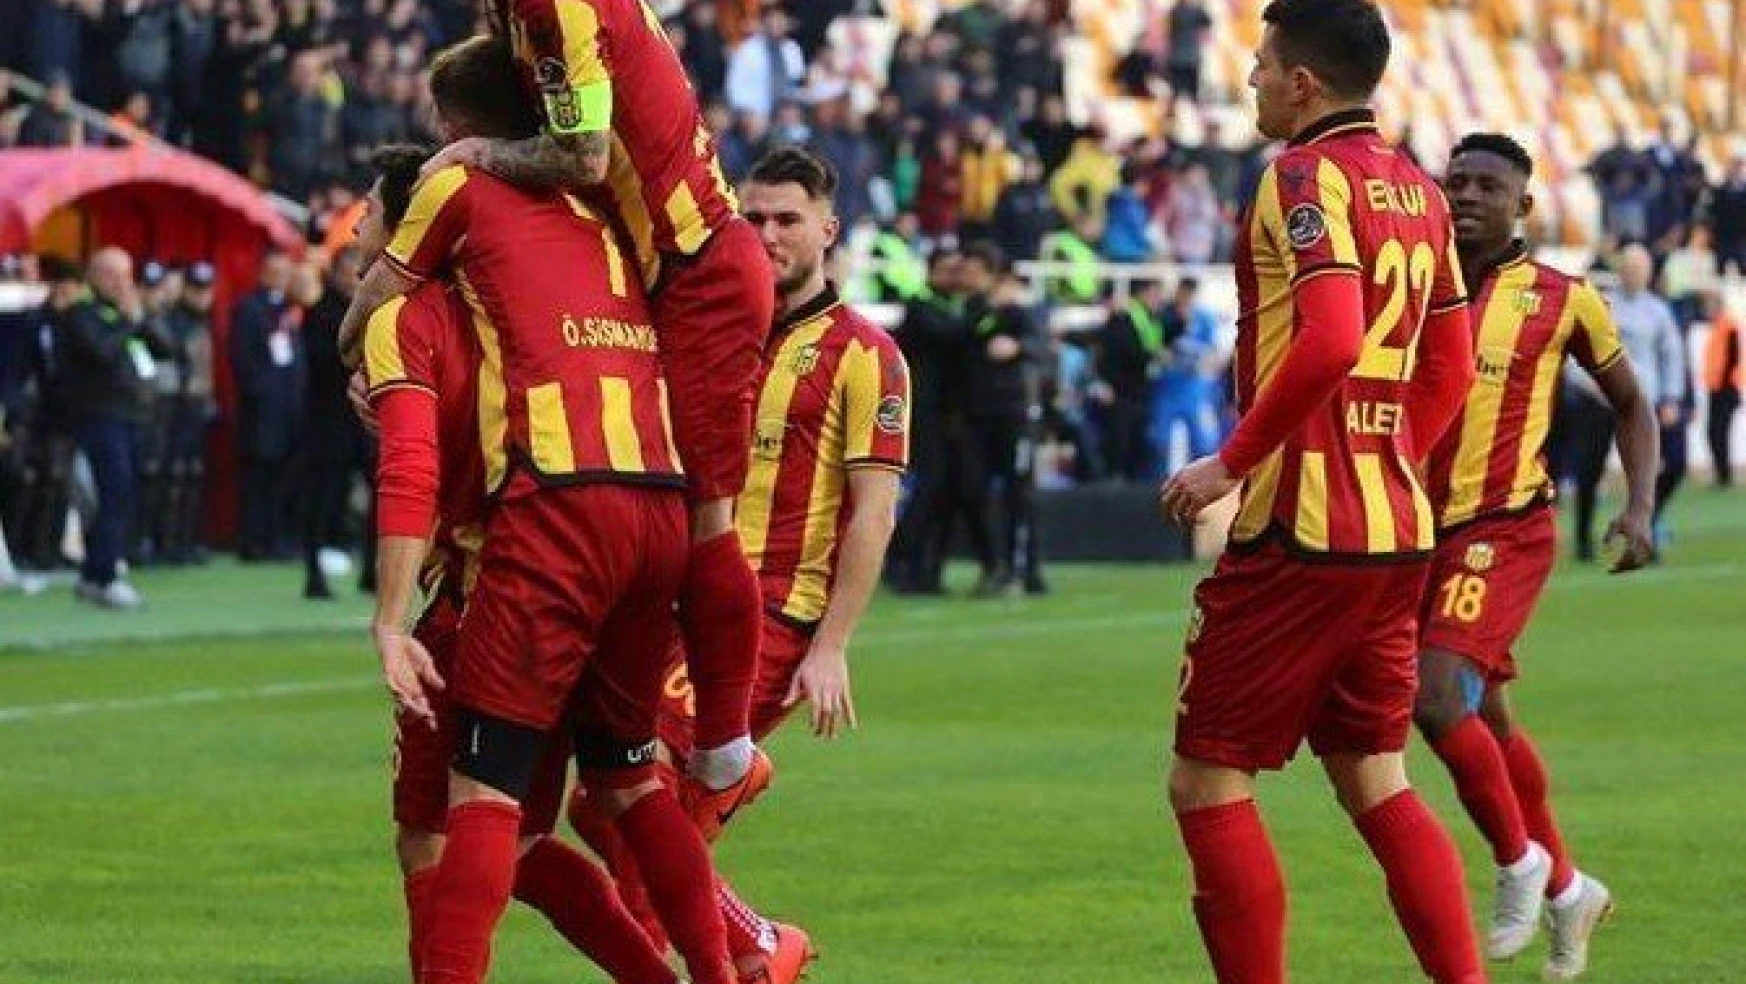 Yeni  Malatyaspor'da oyunculara 4 gün izin